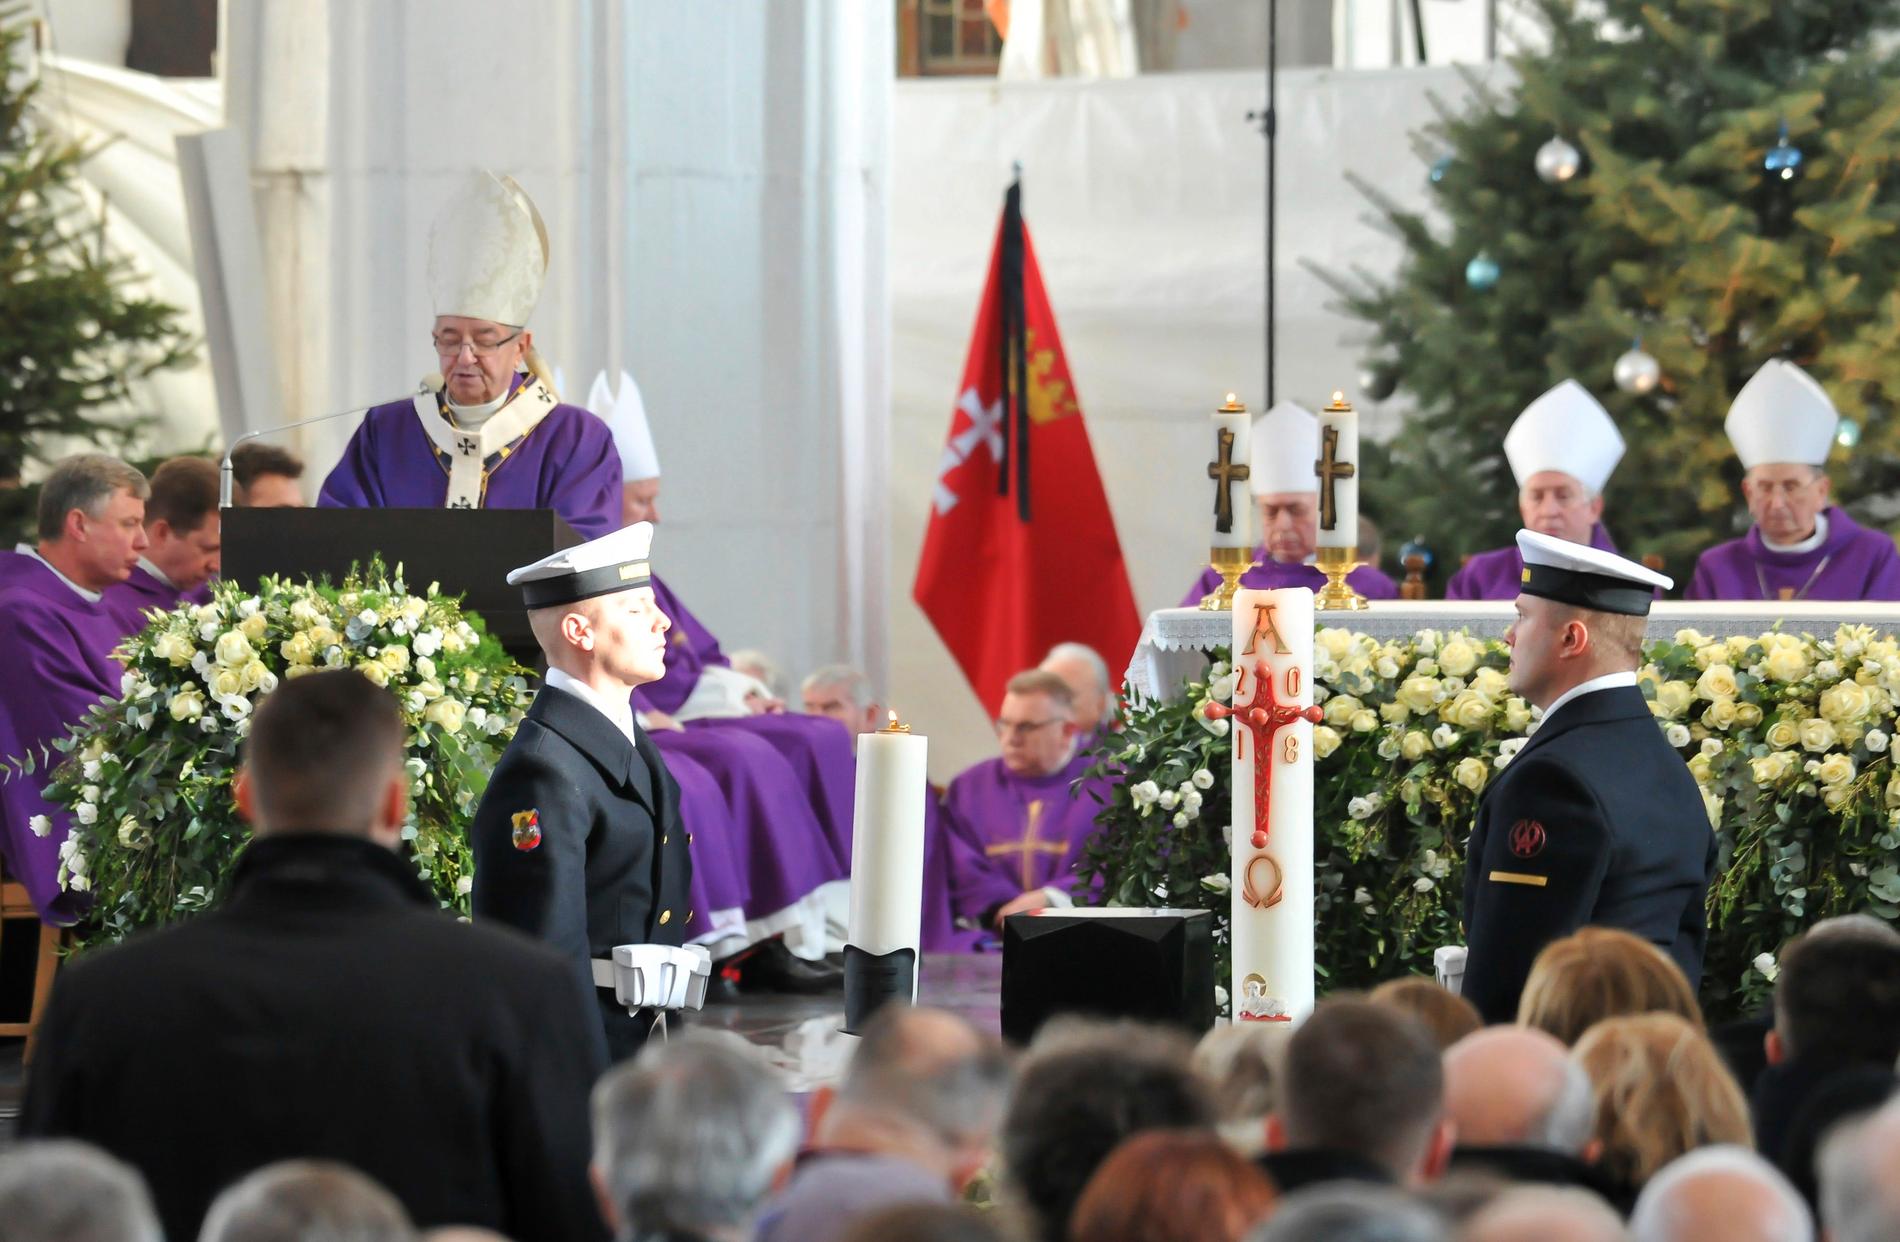 Ärekbiskopen i Gdansk, Slawoj Leszek Glodz, talar under begravningen. Borgmästare Pawel Adamowicz avled i måndags efter en knivattack vid en välgörenhetsgala.